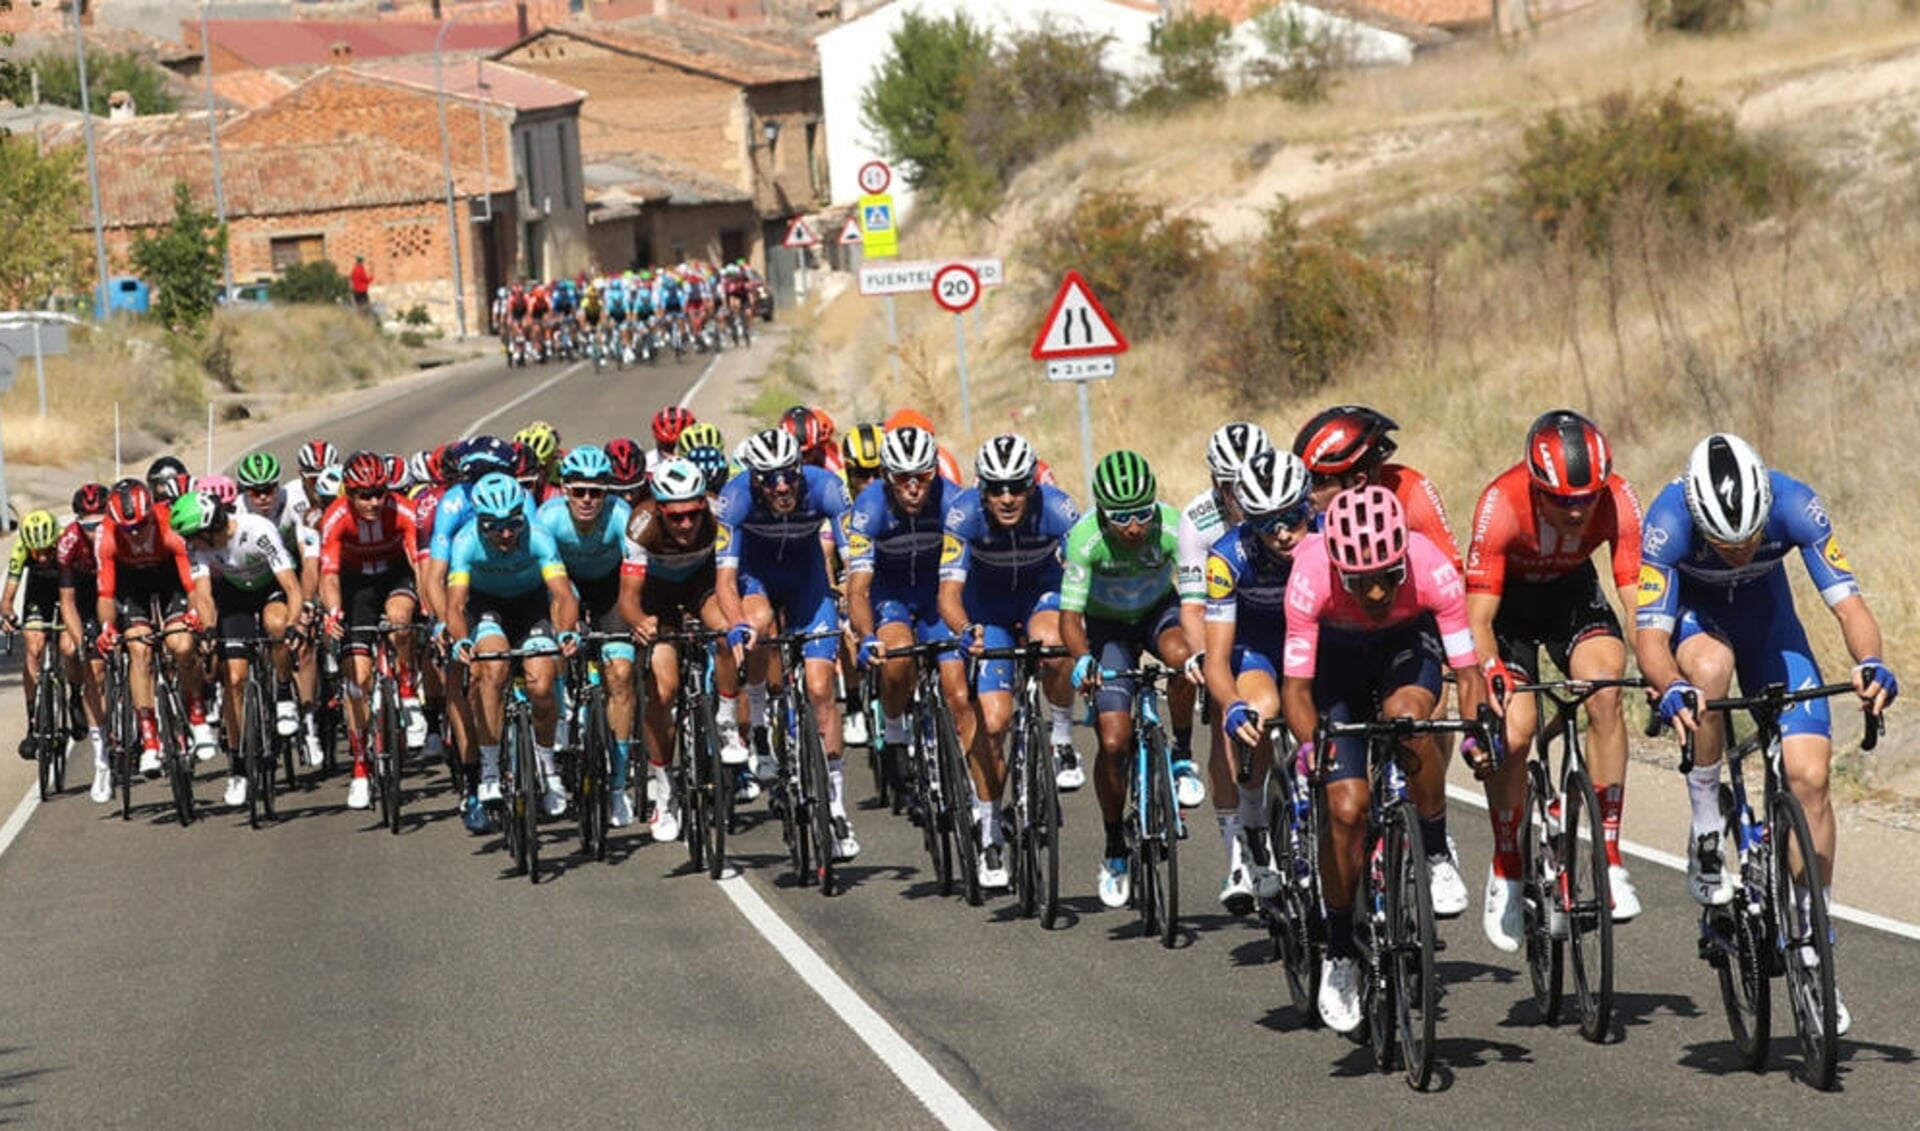 Op zaterdag 15 augustus is de doorkomst van de 75e Ronde van Spanje. 